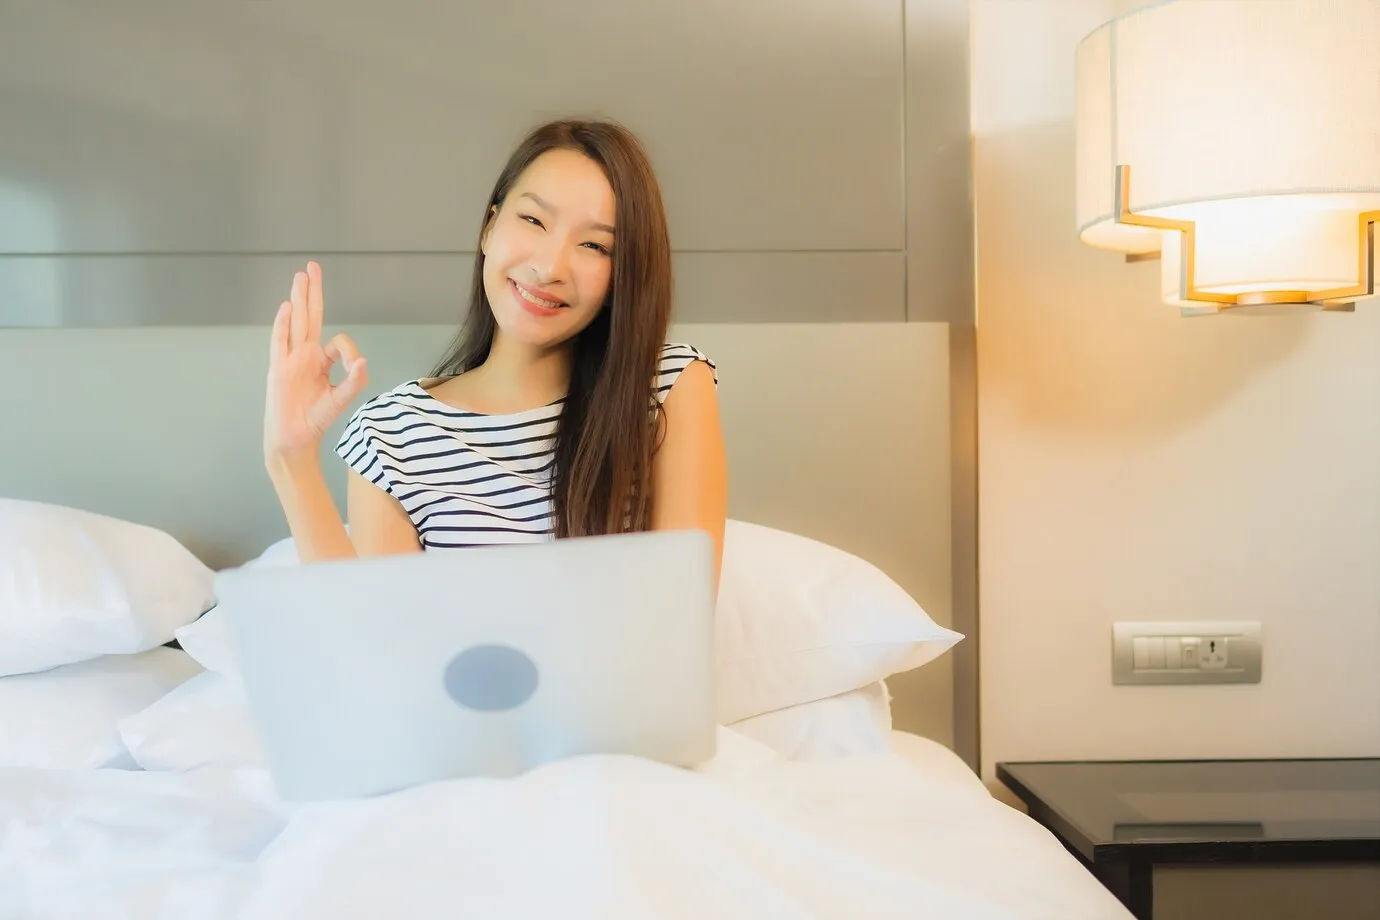 Thai Sex Host On Webcam